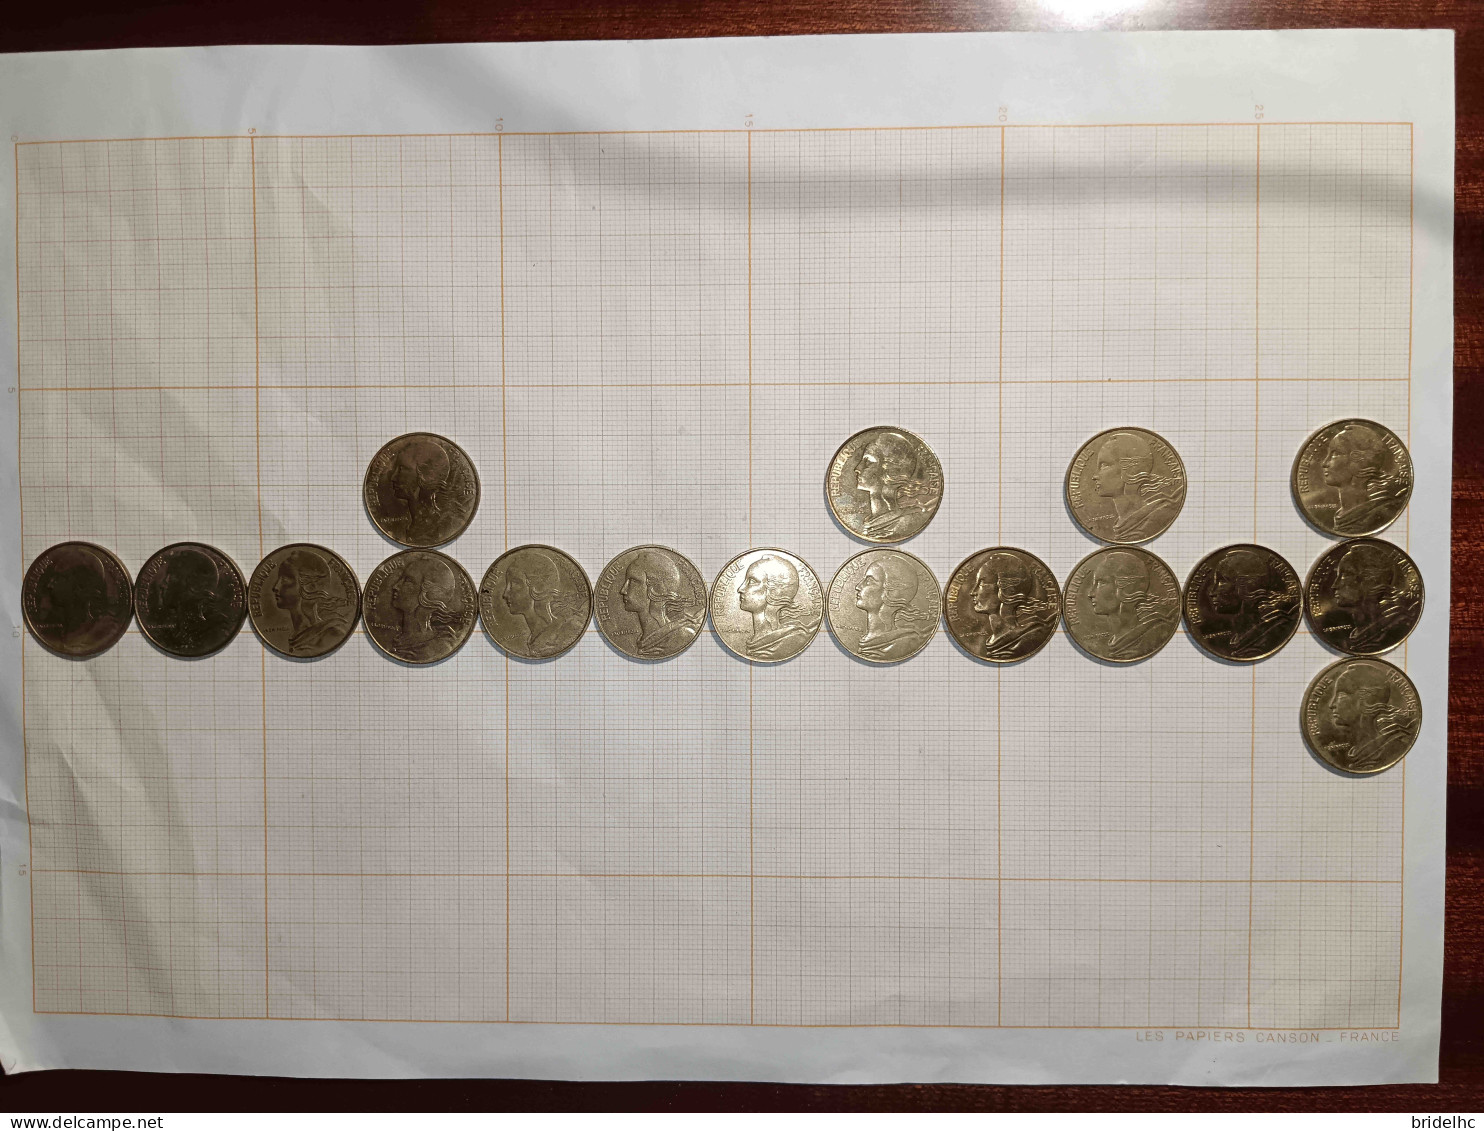 France 5ème République 20 Centimes Marianne Lot - Lots & Kiloware - Coins